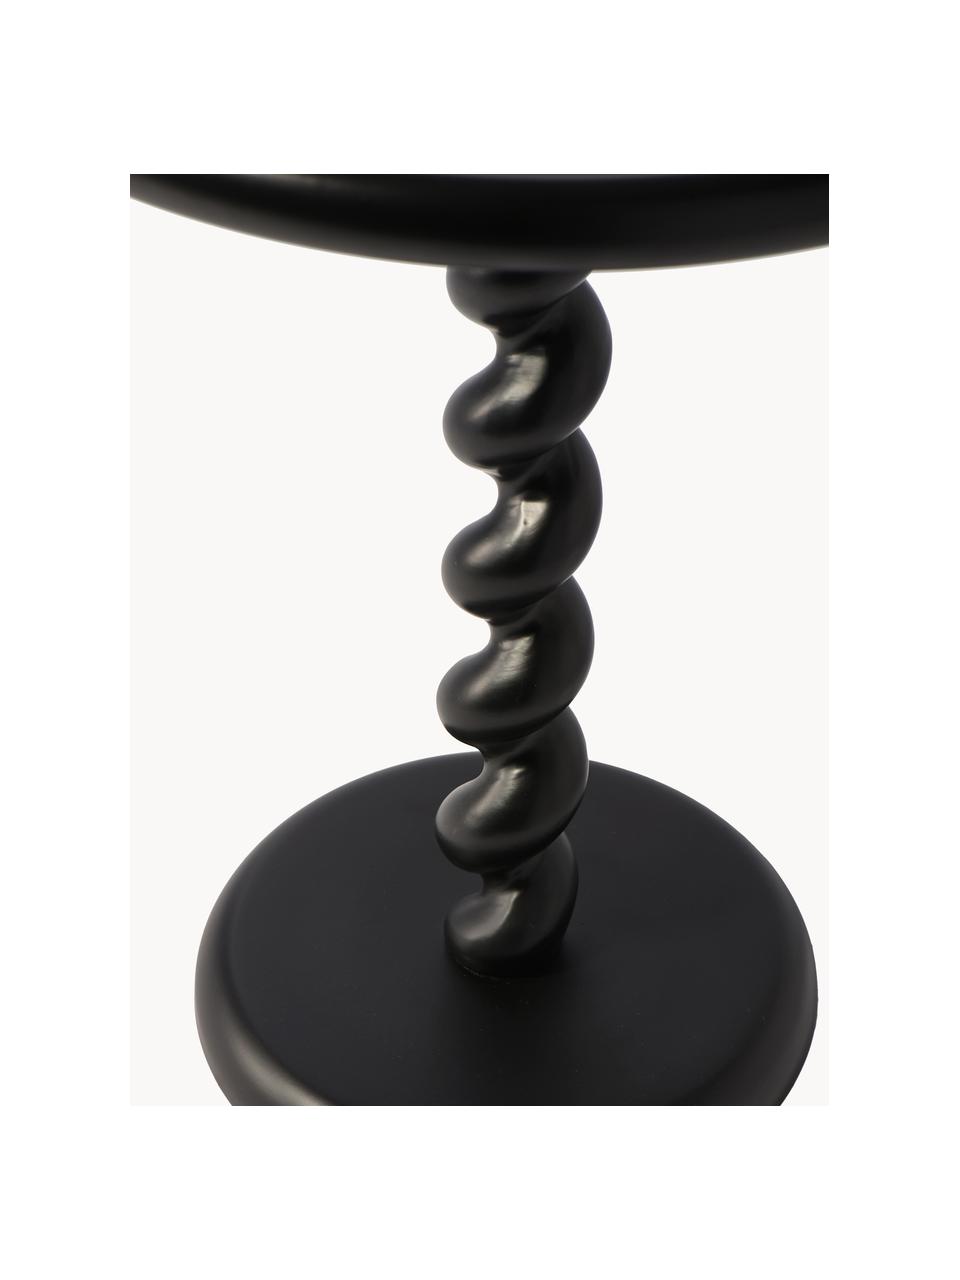 Stolik pomocniczy Twister, Aluminium malowane proszkowo, Czarny, Ø 46 x W 56 cm